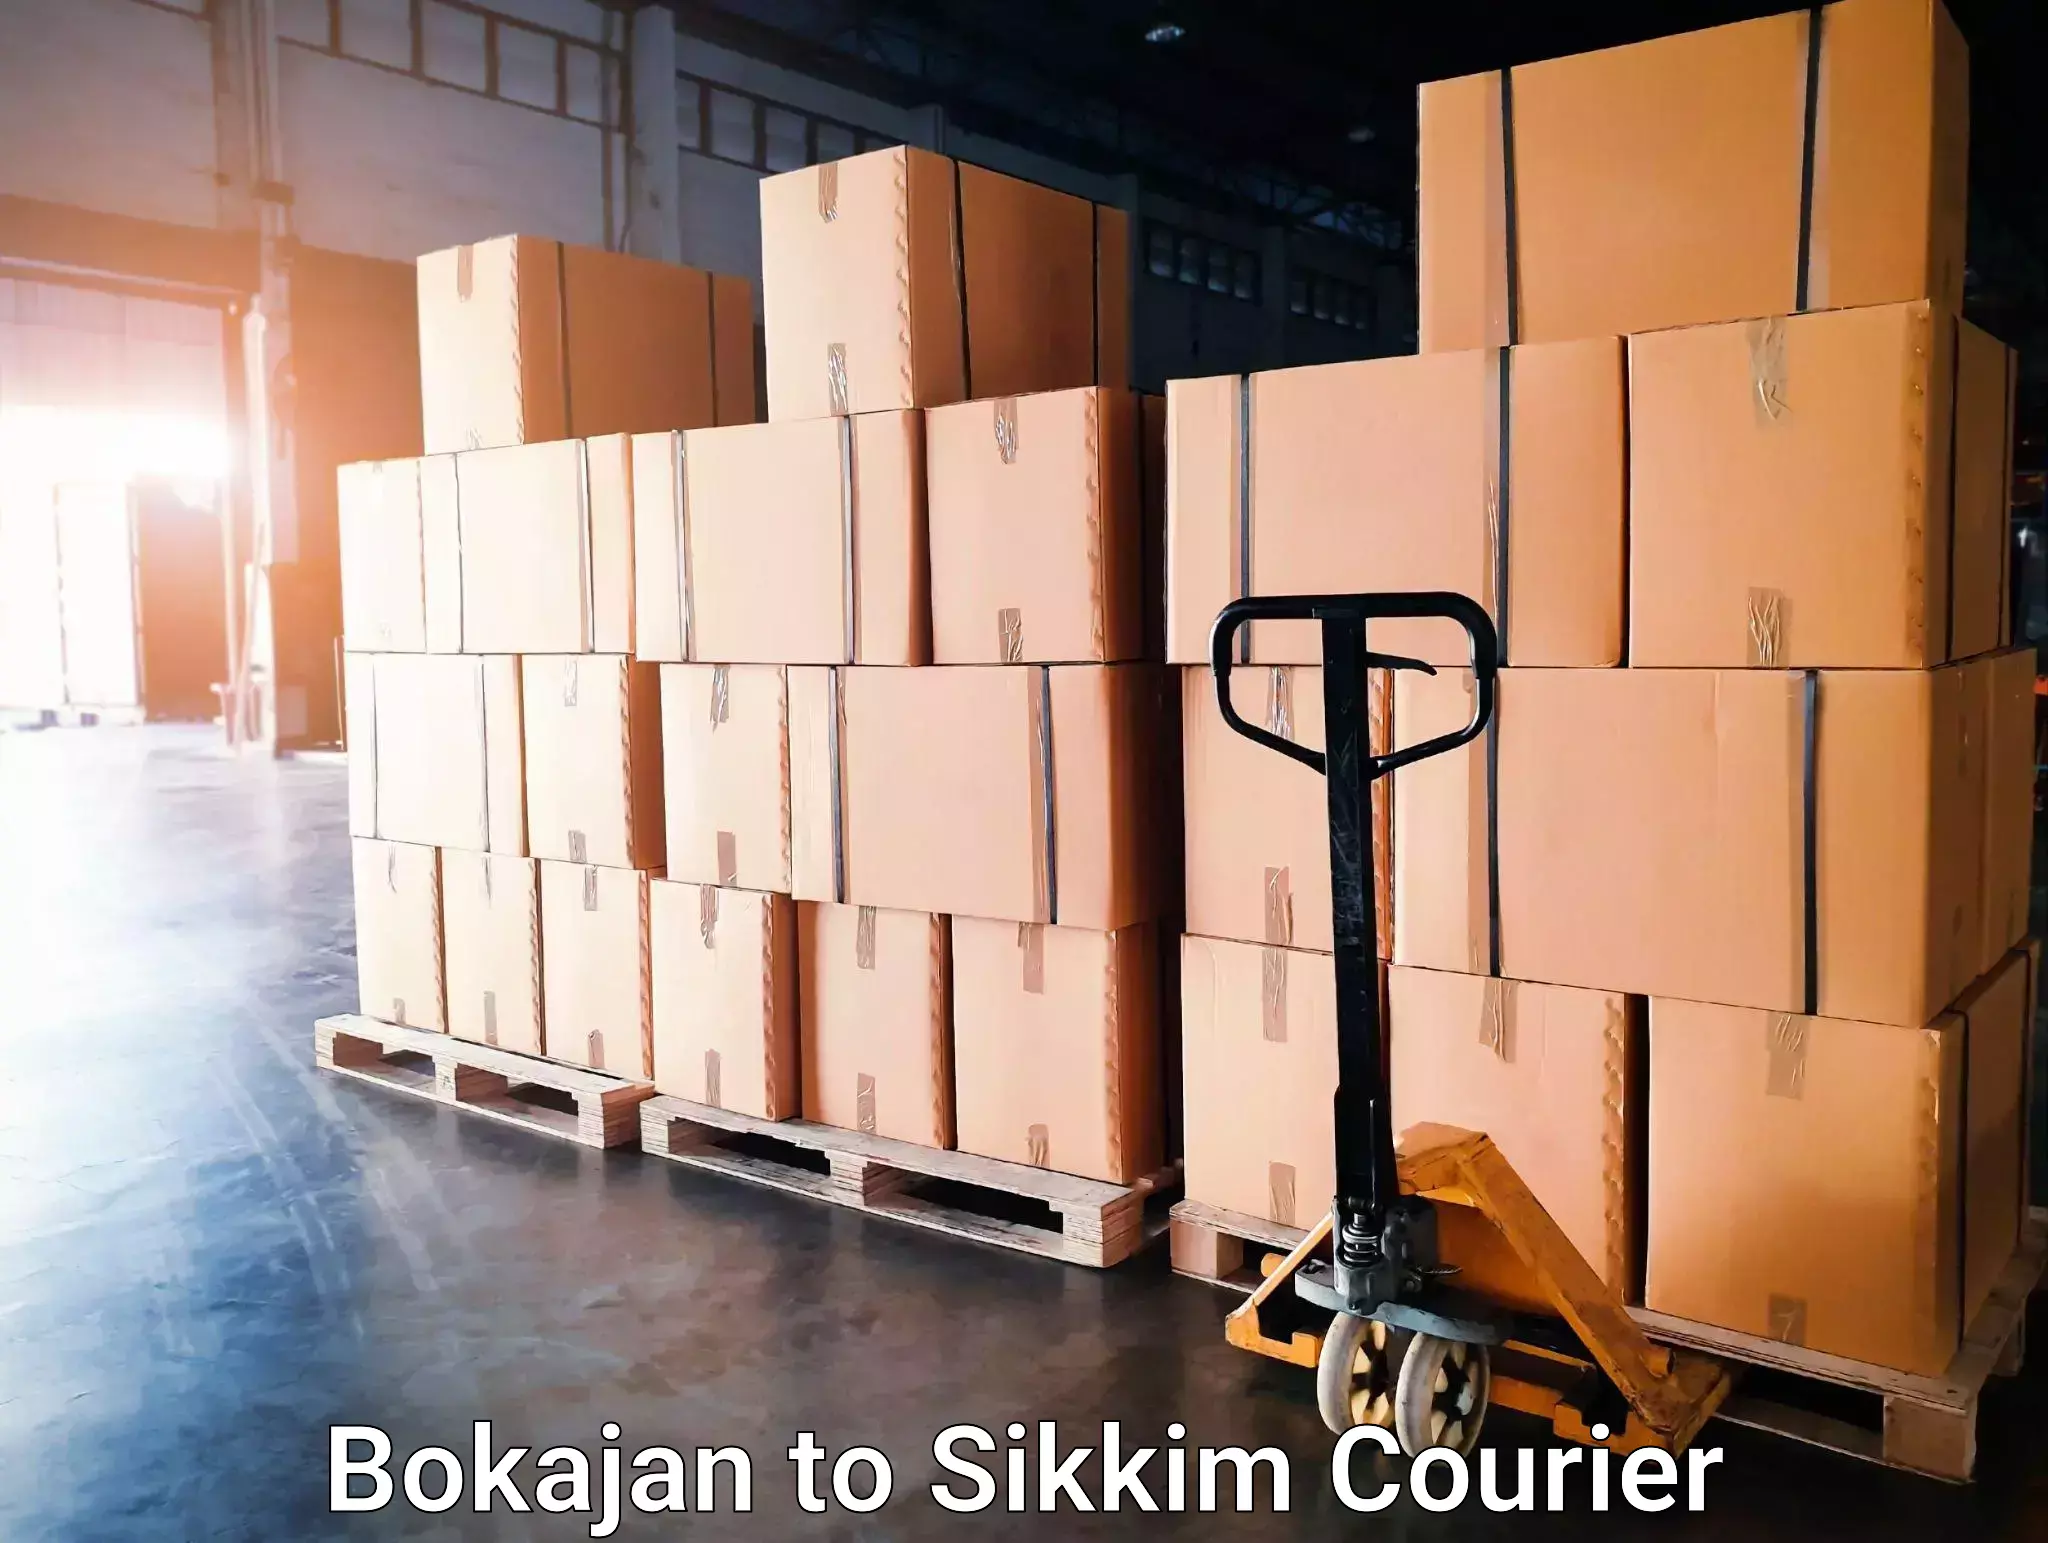 Next-day freight services Bokajan to Sikkim